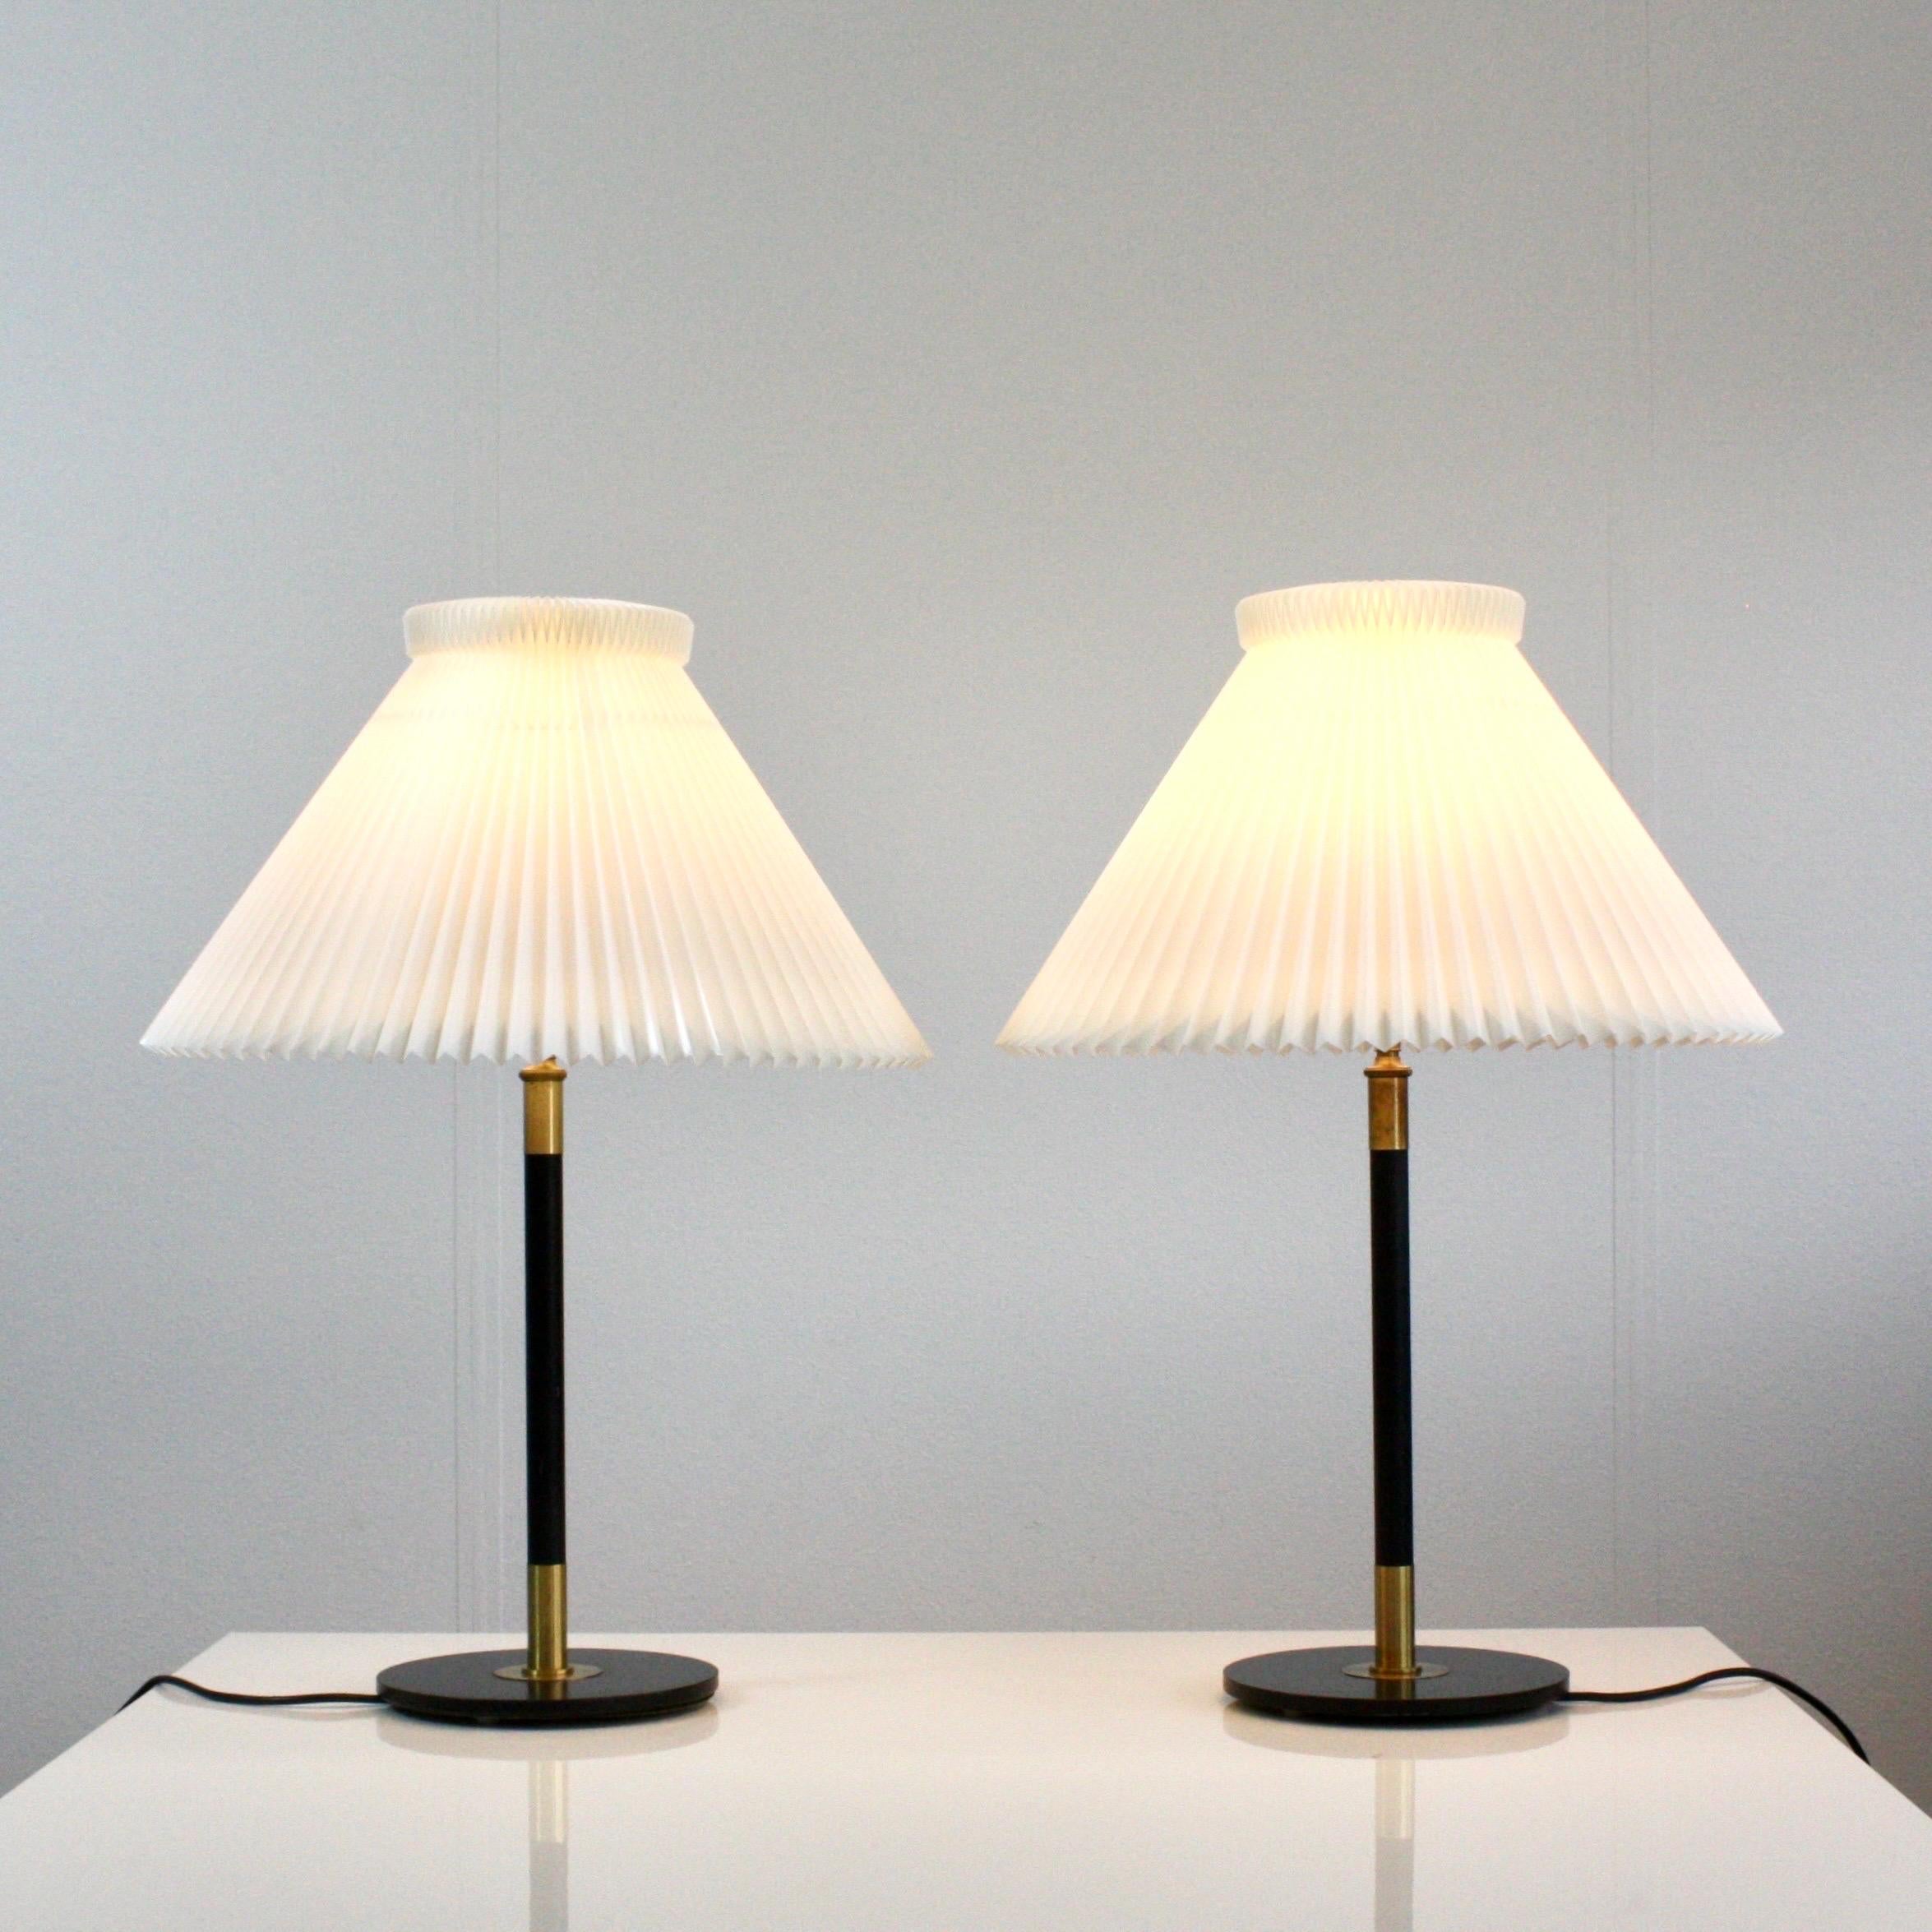 Ein Paar Tischlampen, entworfen von Aage Petersen für Le Klint im Jahr 1950, mit schwarzen Metallsockeln und den klassischen weißen Le Klint-Schirmen. Das Set ist in sehr gutem  Vintage-Zustand.

* Ein Paar schwarze Tischlampen mit Messingdetails